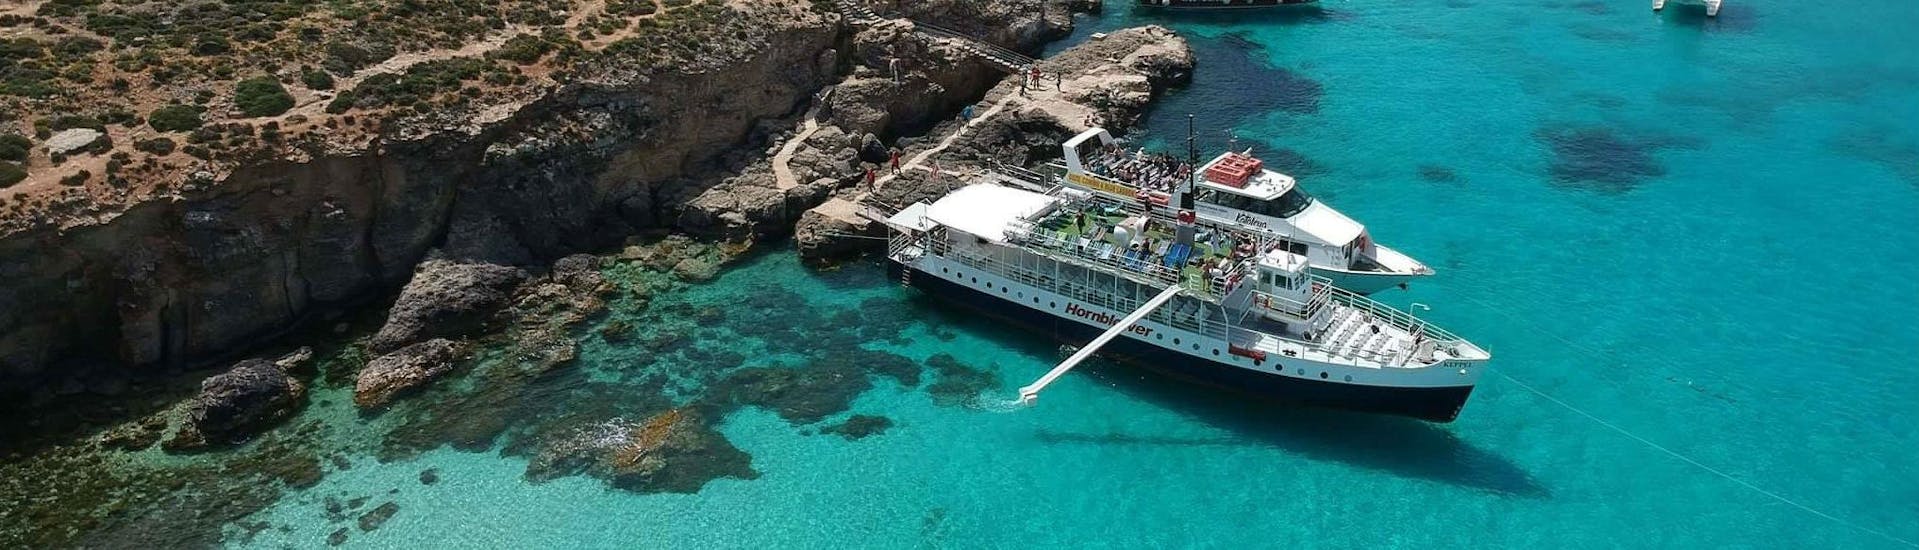 Barca ancorata durante la gita in barca a Comino, inclusa la Laguna Blu e le Grotte di Santa Maria, organizzata da Hornblower Cruises Bugibba.